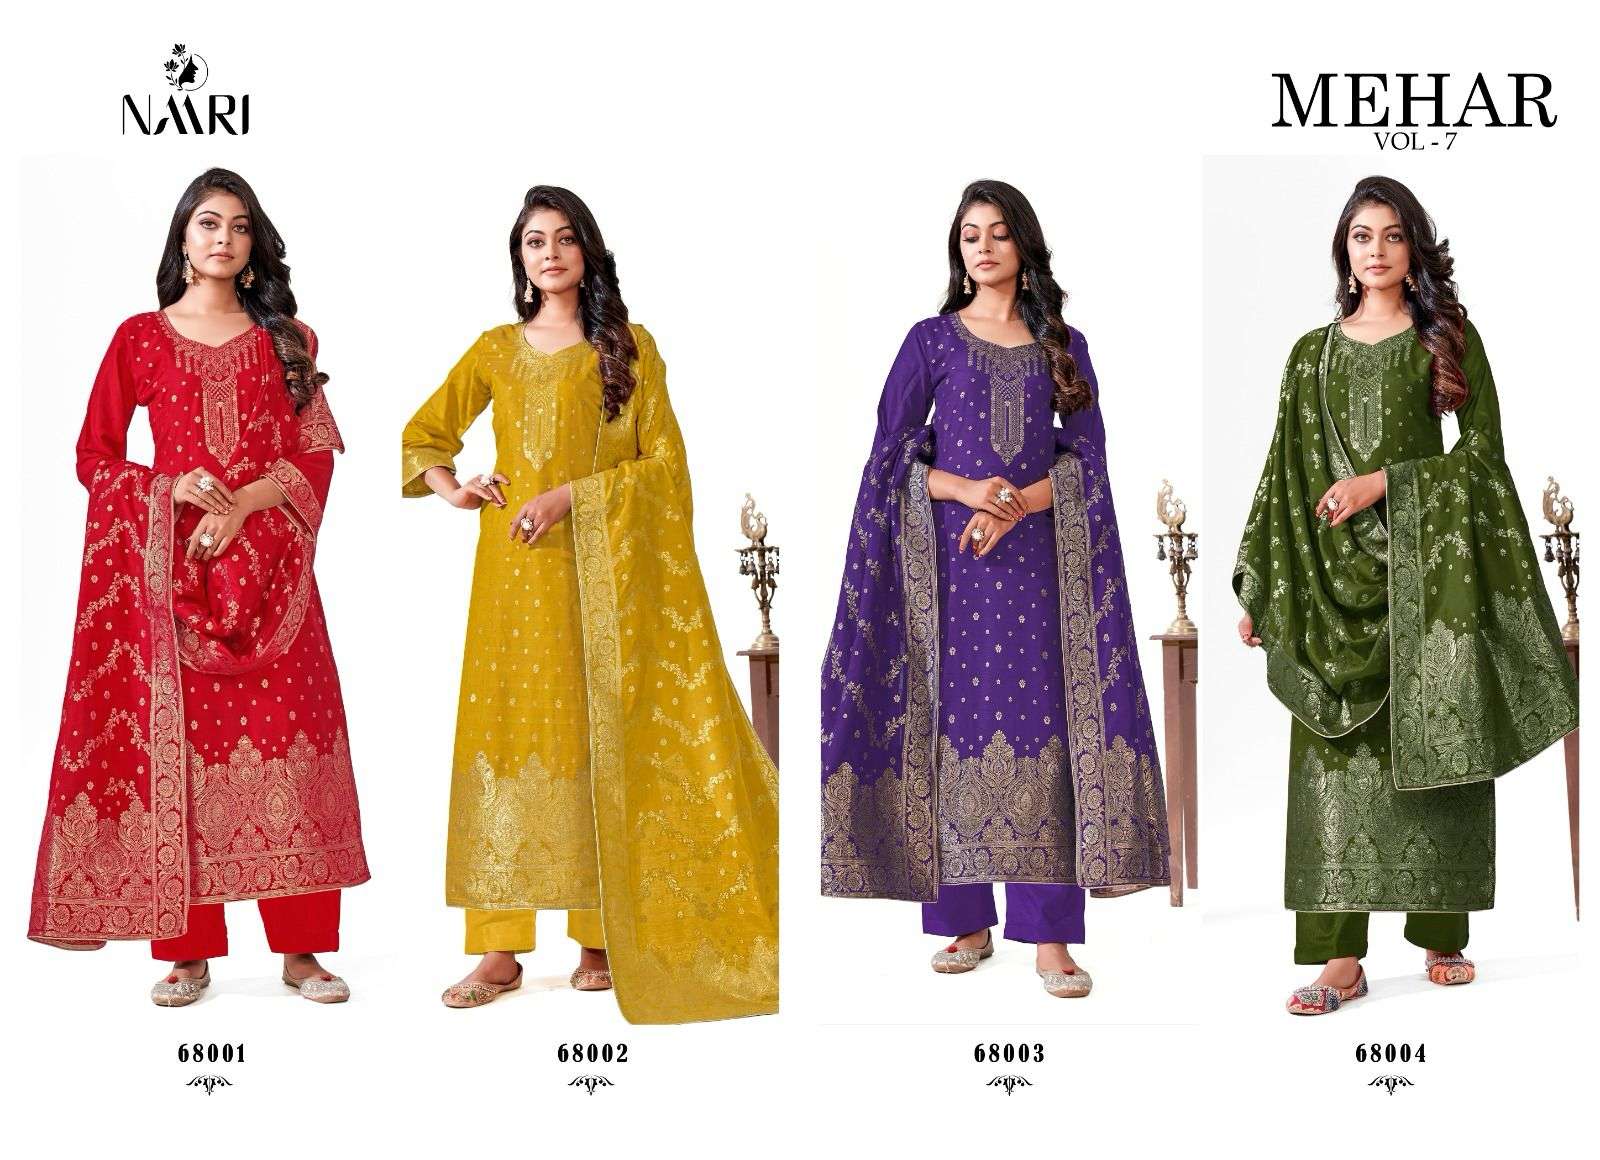 naari mehar vol-7 68001-68004 series latest designer salwar kameez wholesaler surat gujarat